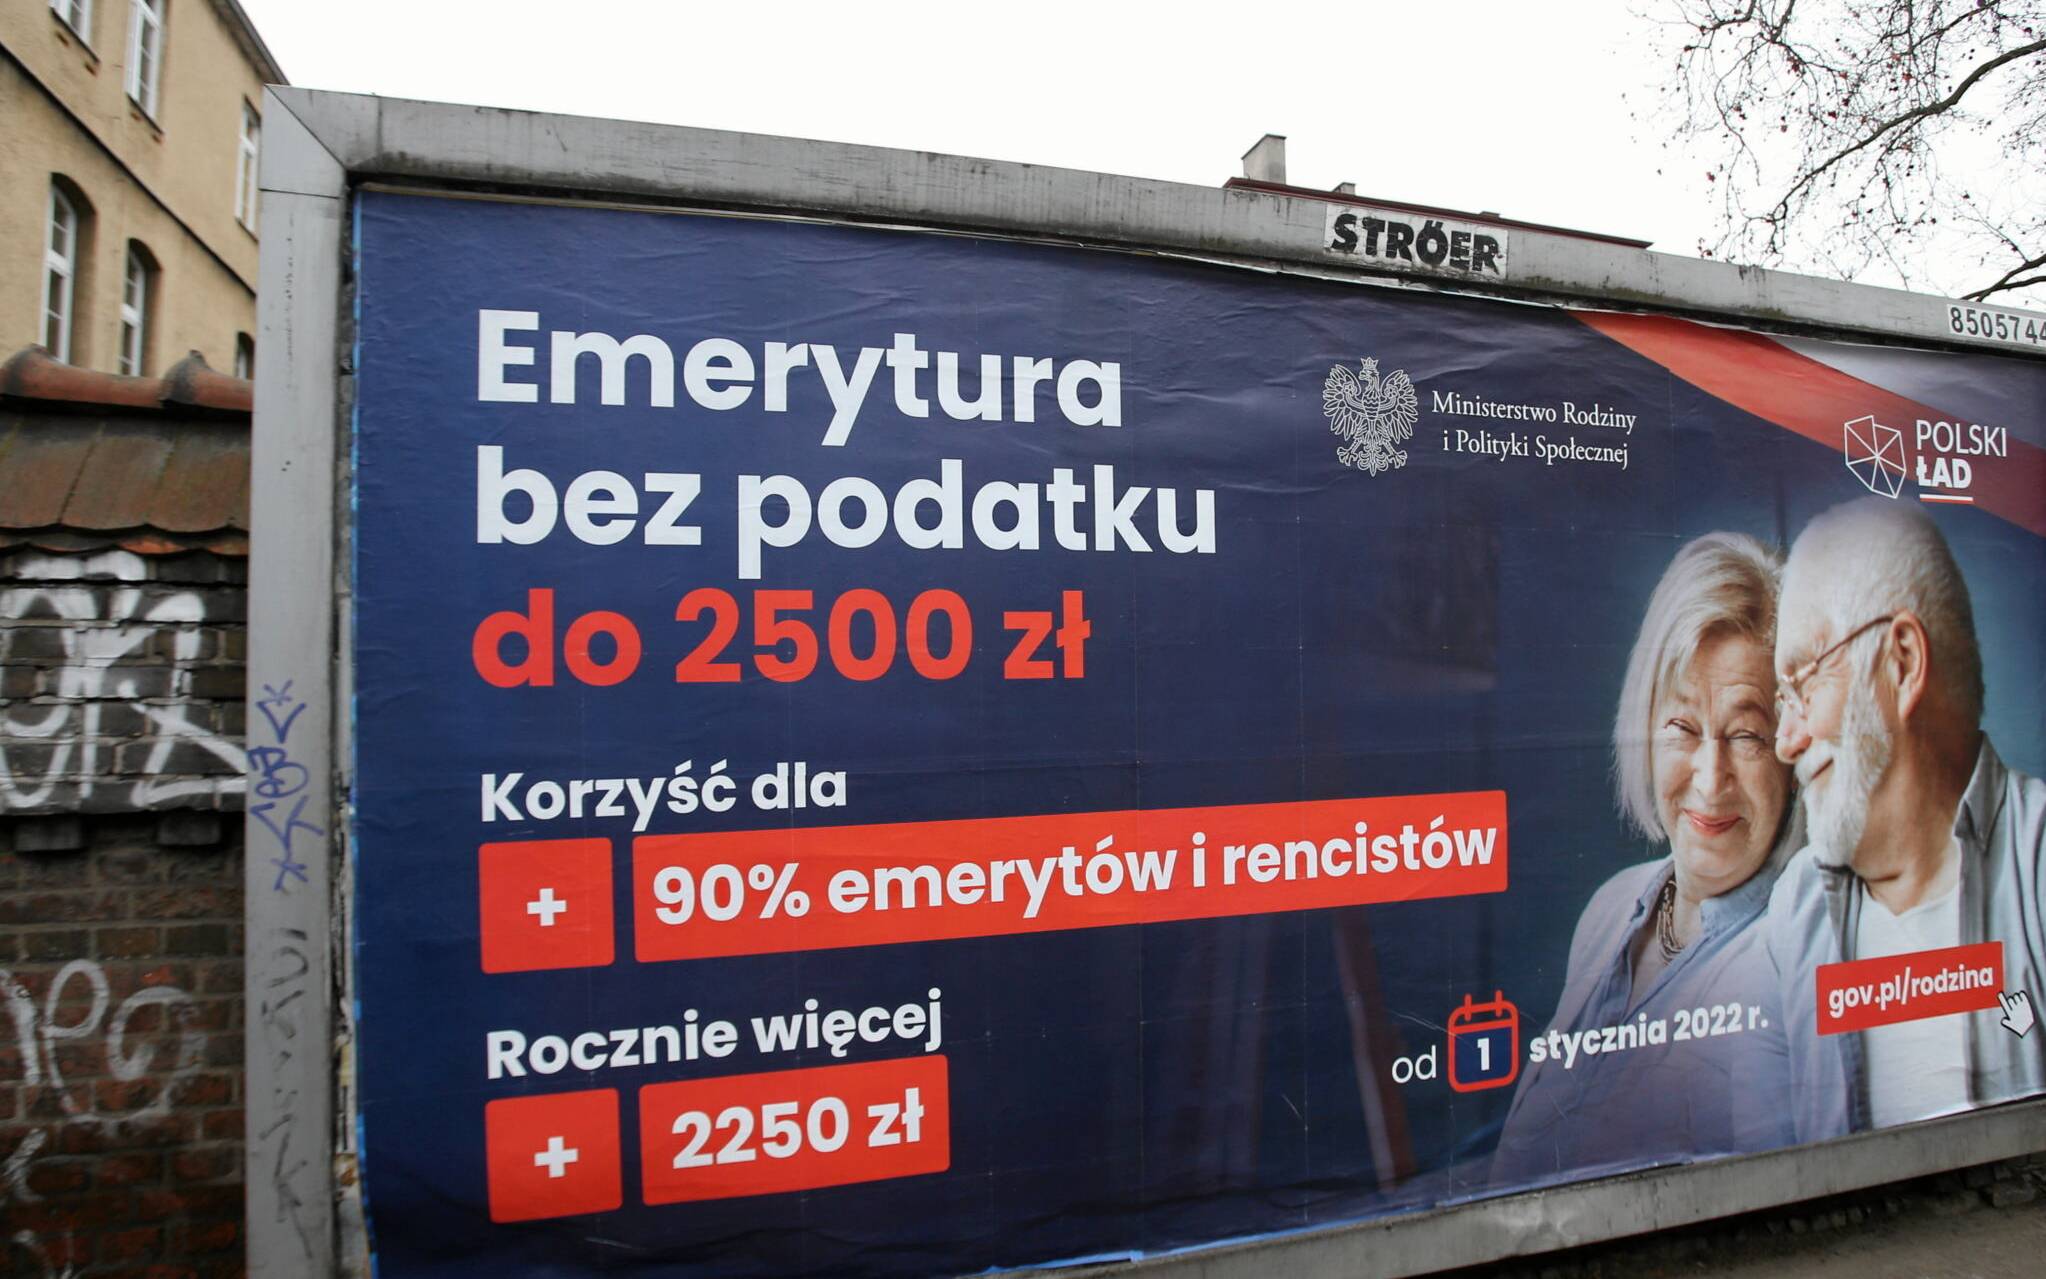 22.12.2021 Szczecin , ul. Powstancow Wlkp . Billboard Polski Lad - emerytura .
Fot. Cezary Aszkielowicz / Agencja Wyborcza.pl